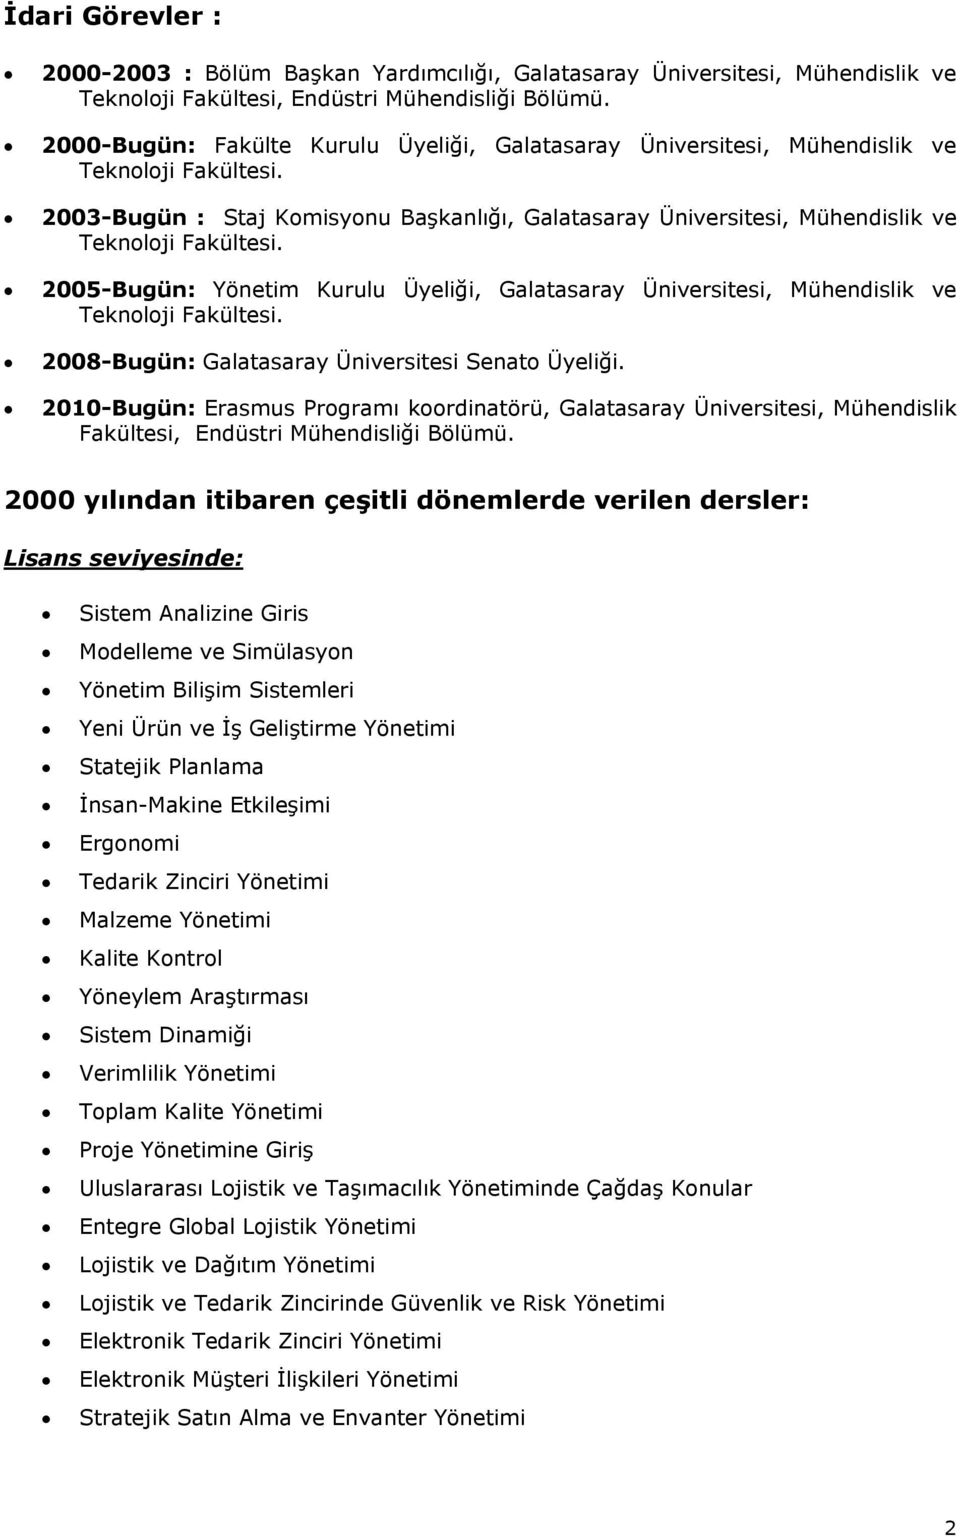 2005-Bugün: Yönetim Kurulu Üyeliği, Galatasaray Üniversitesi, Mühendislik ve Teknoloji Fakültesi. 2008-Bugün: Galatasaray Üniversitesi Senato Üyeliği.